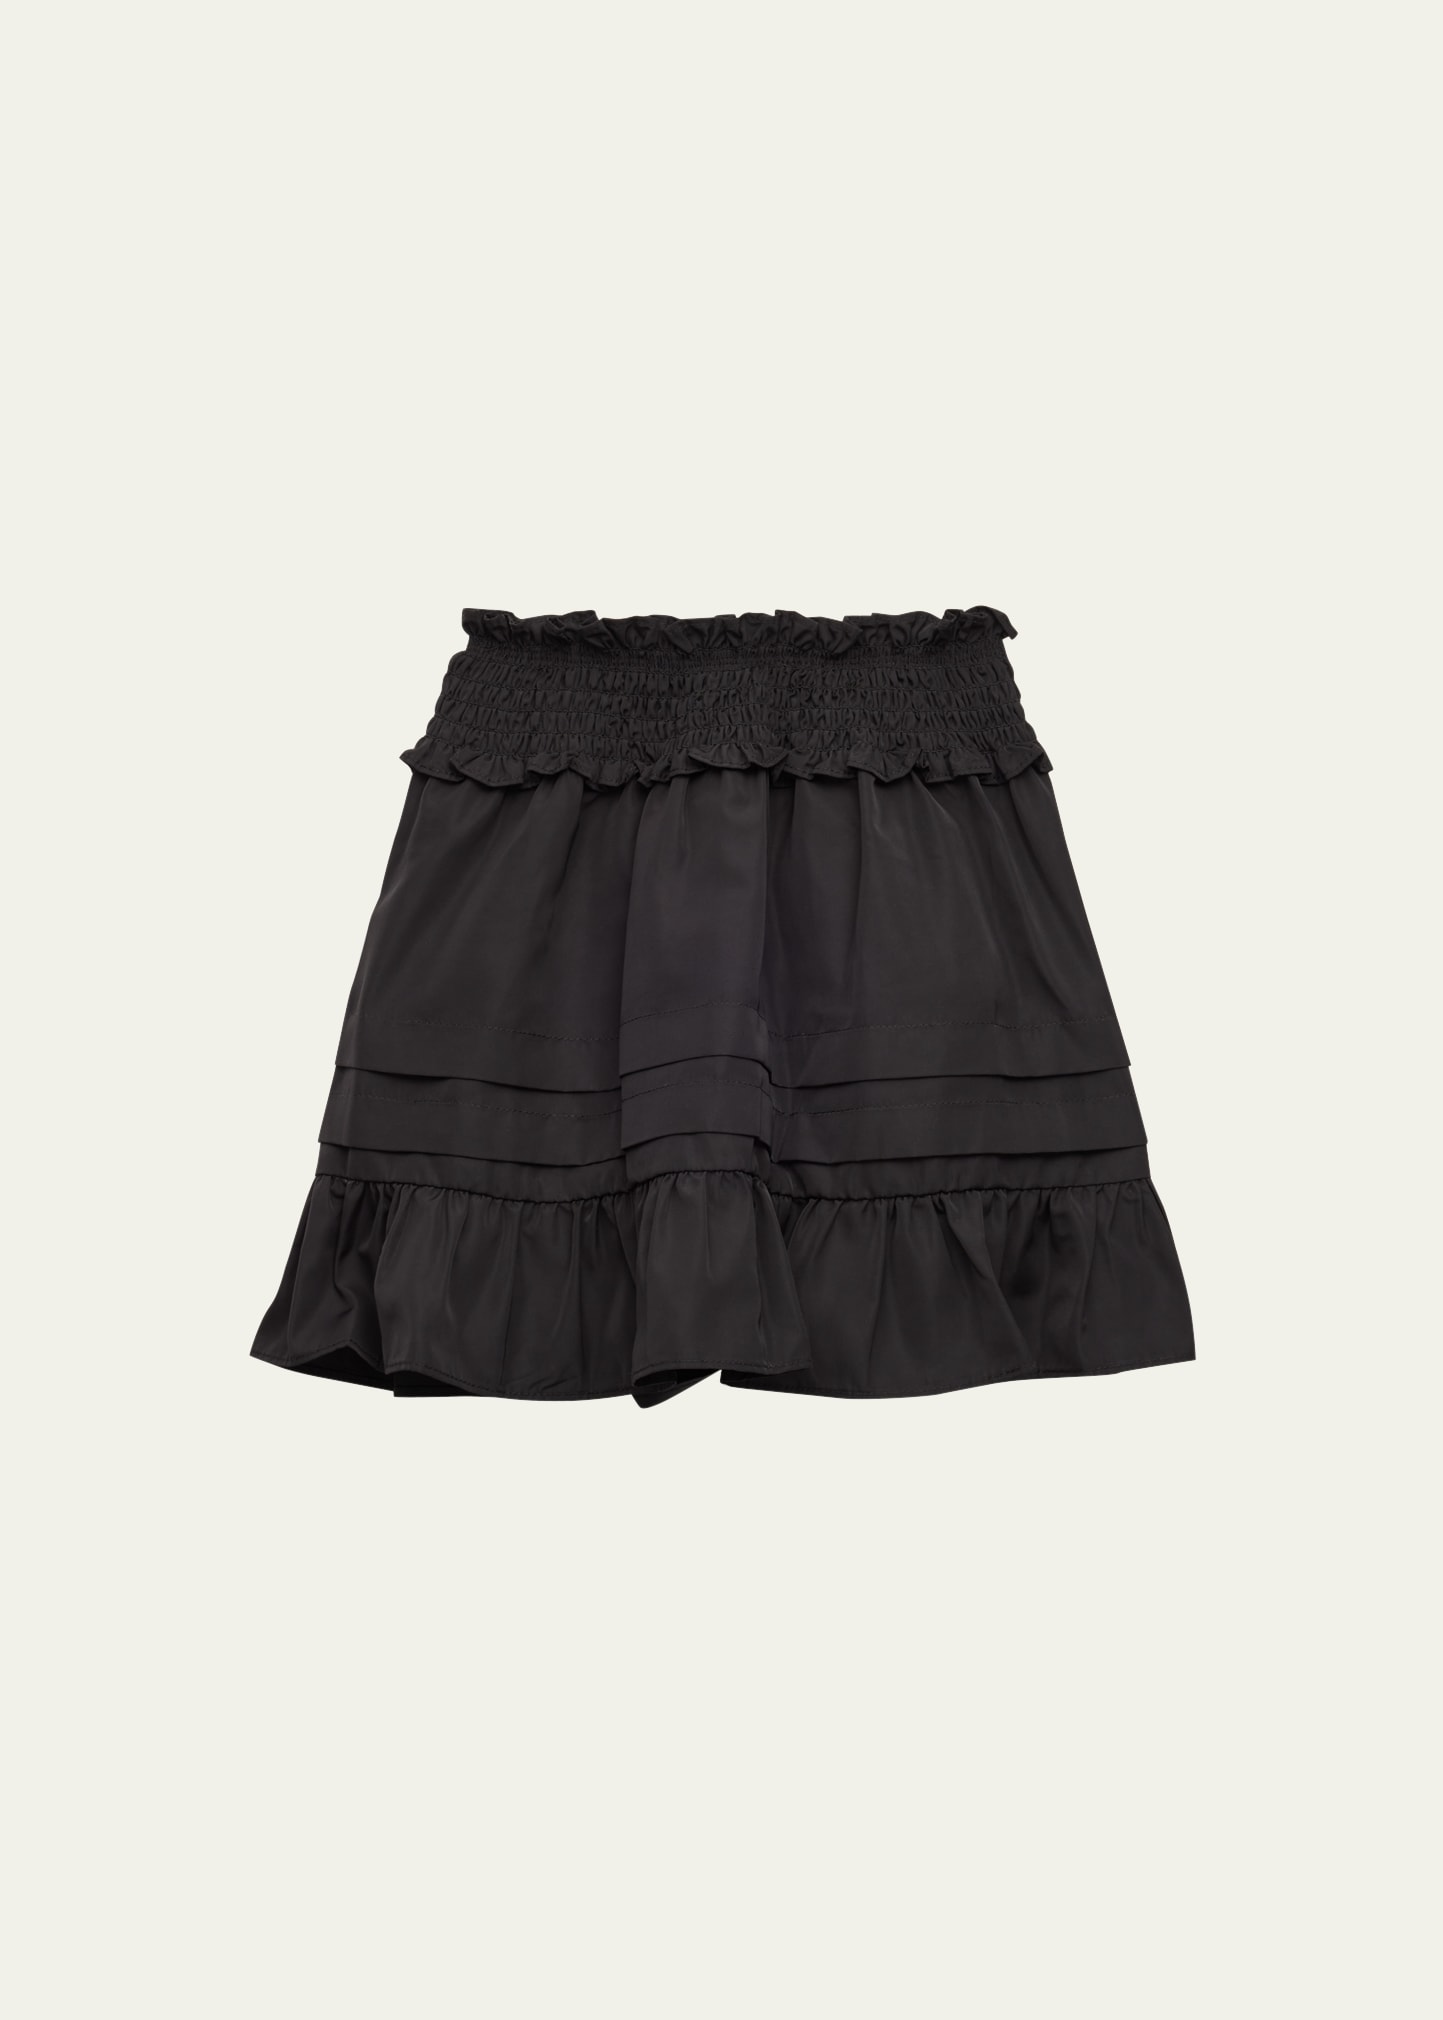 Sea Kids' Girl's Diana Smocked Taffeta Skirt In Black